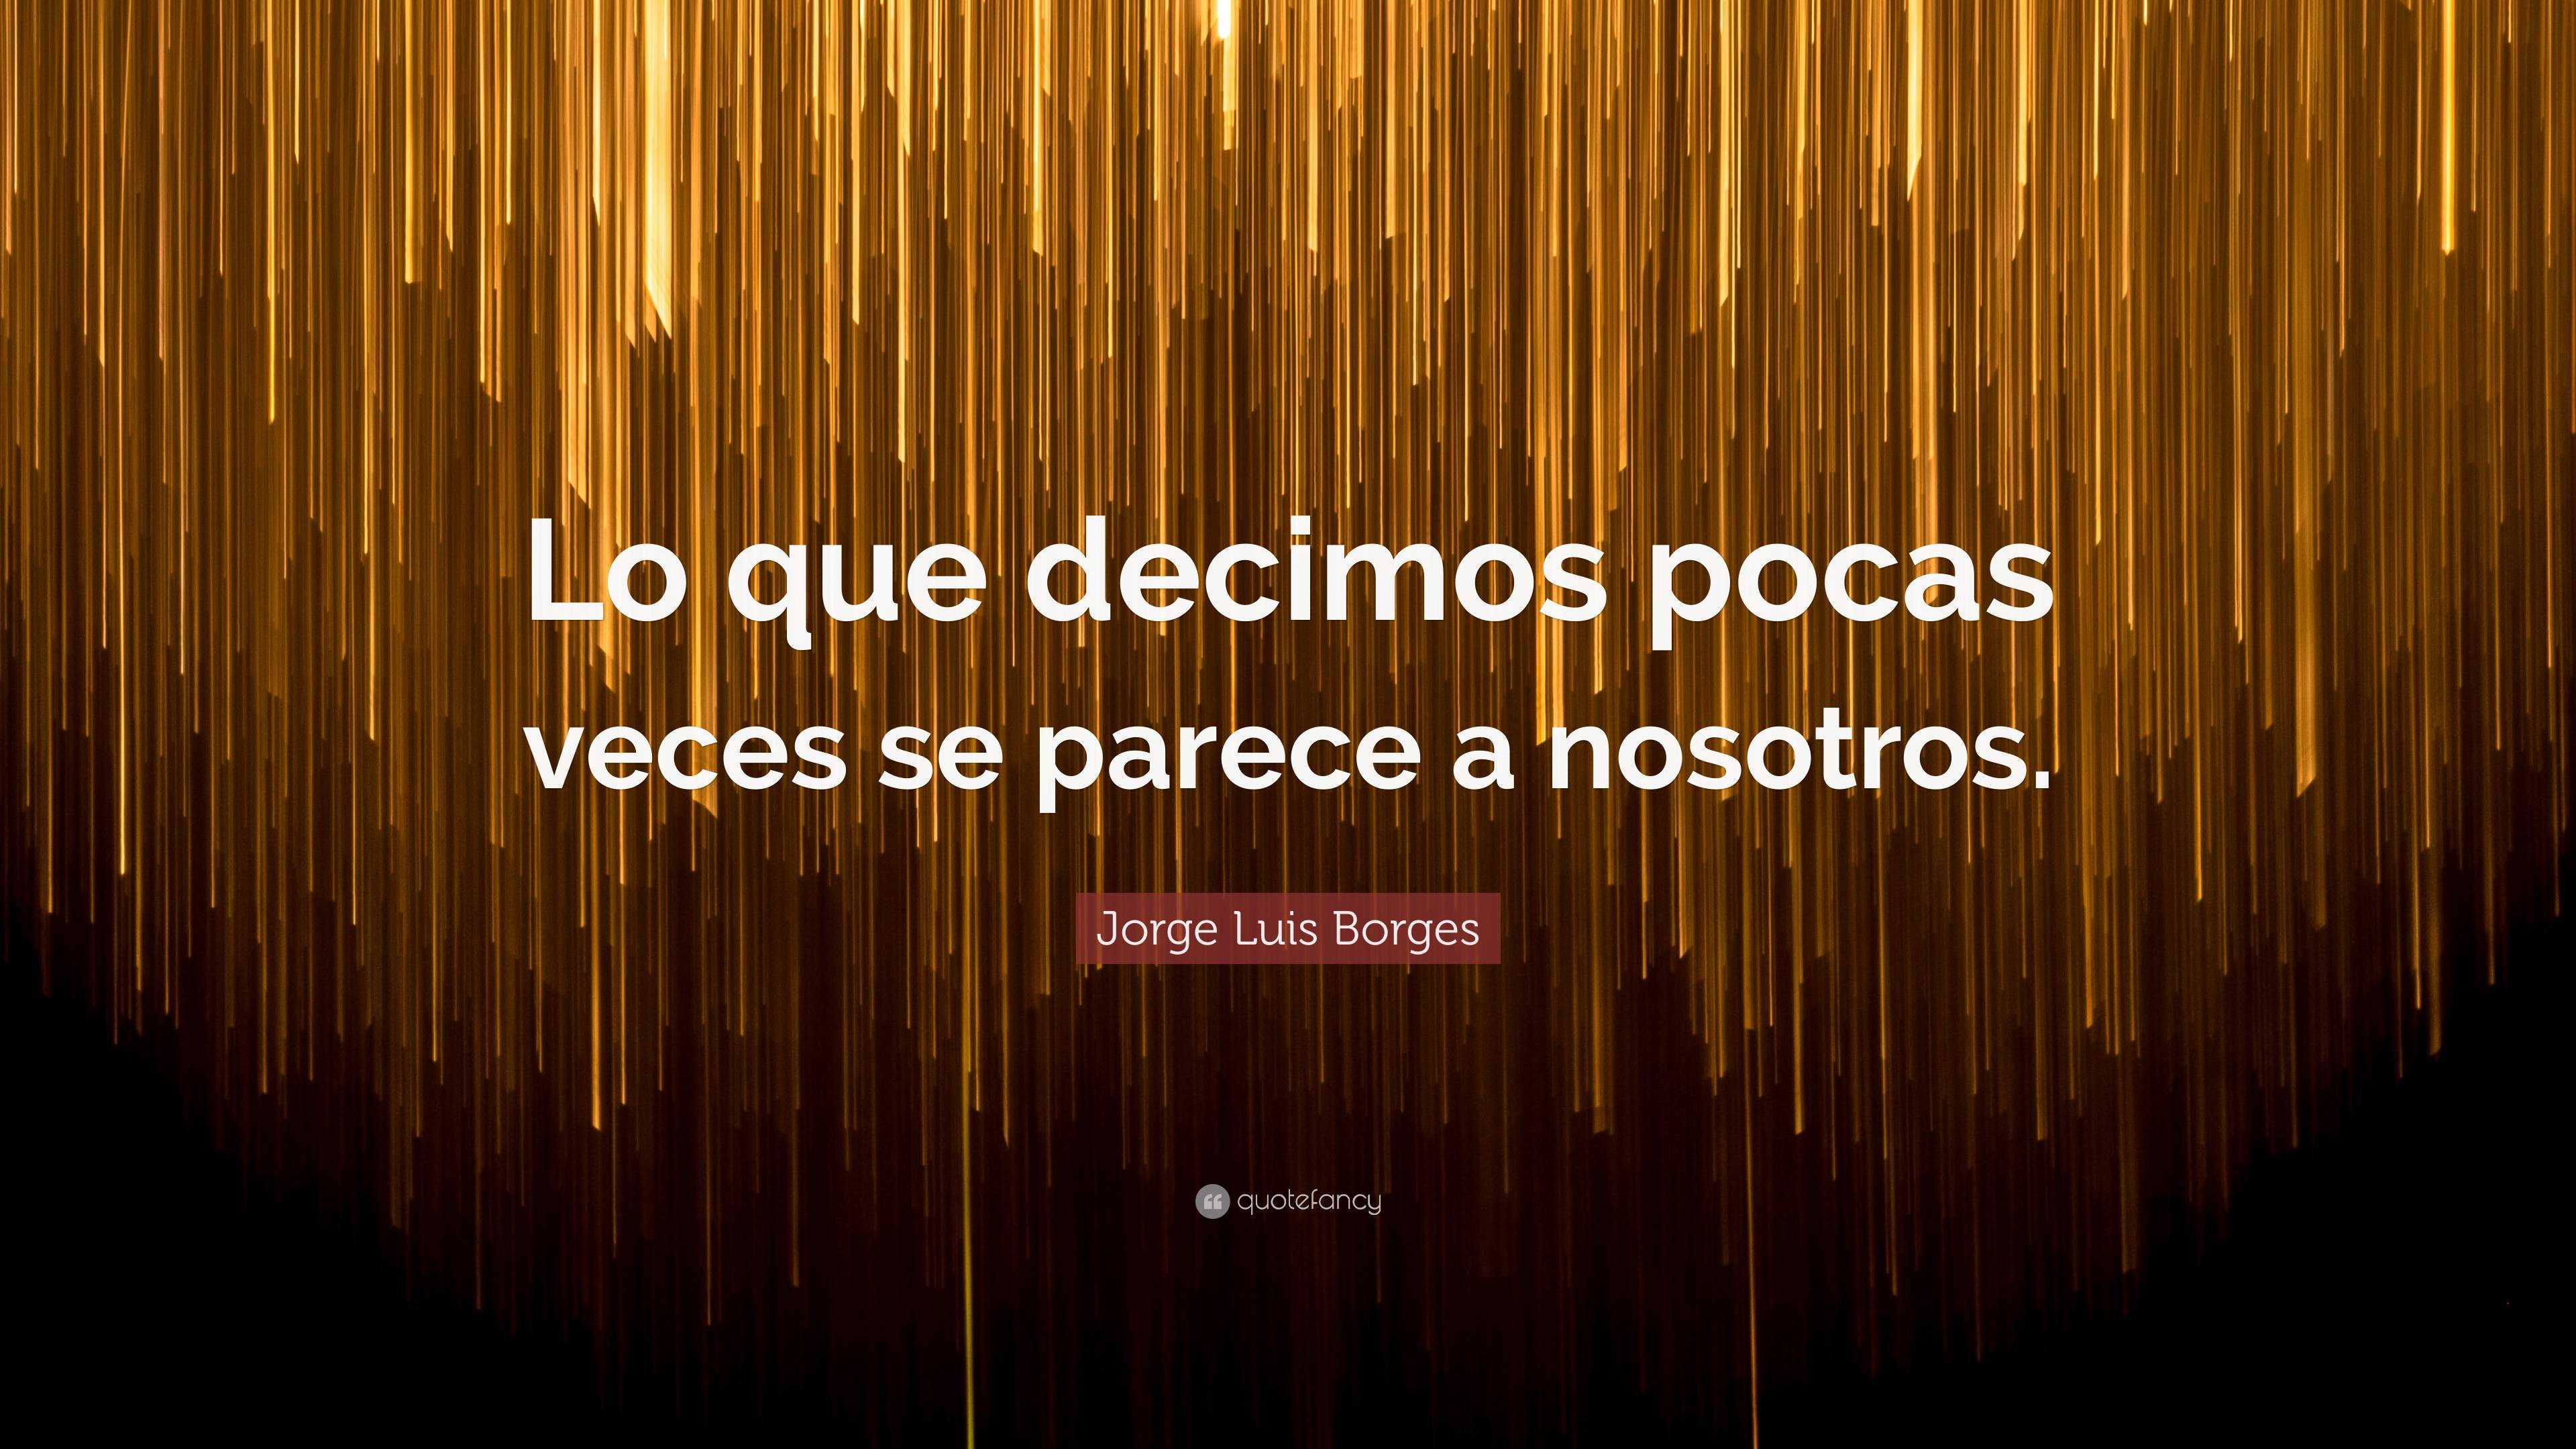 Jorge Luis Borges Quote: “Lo que decimos pocas veces se parece a nosotros.”